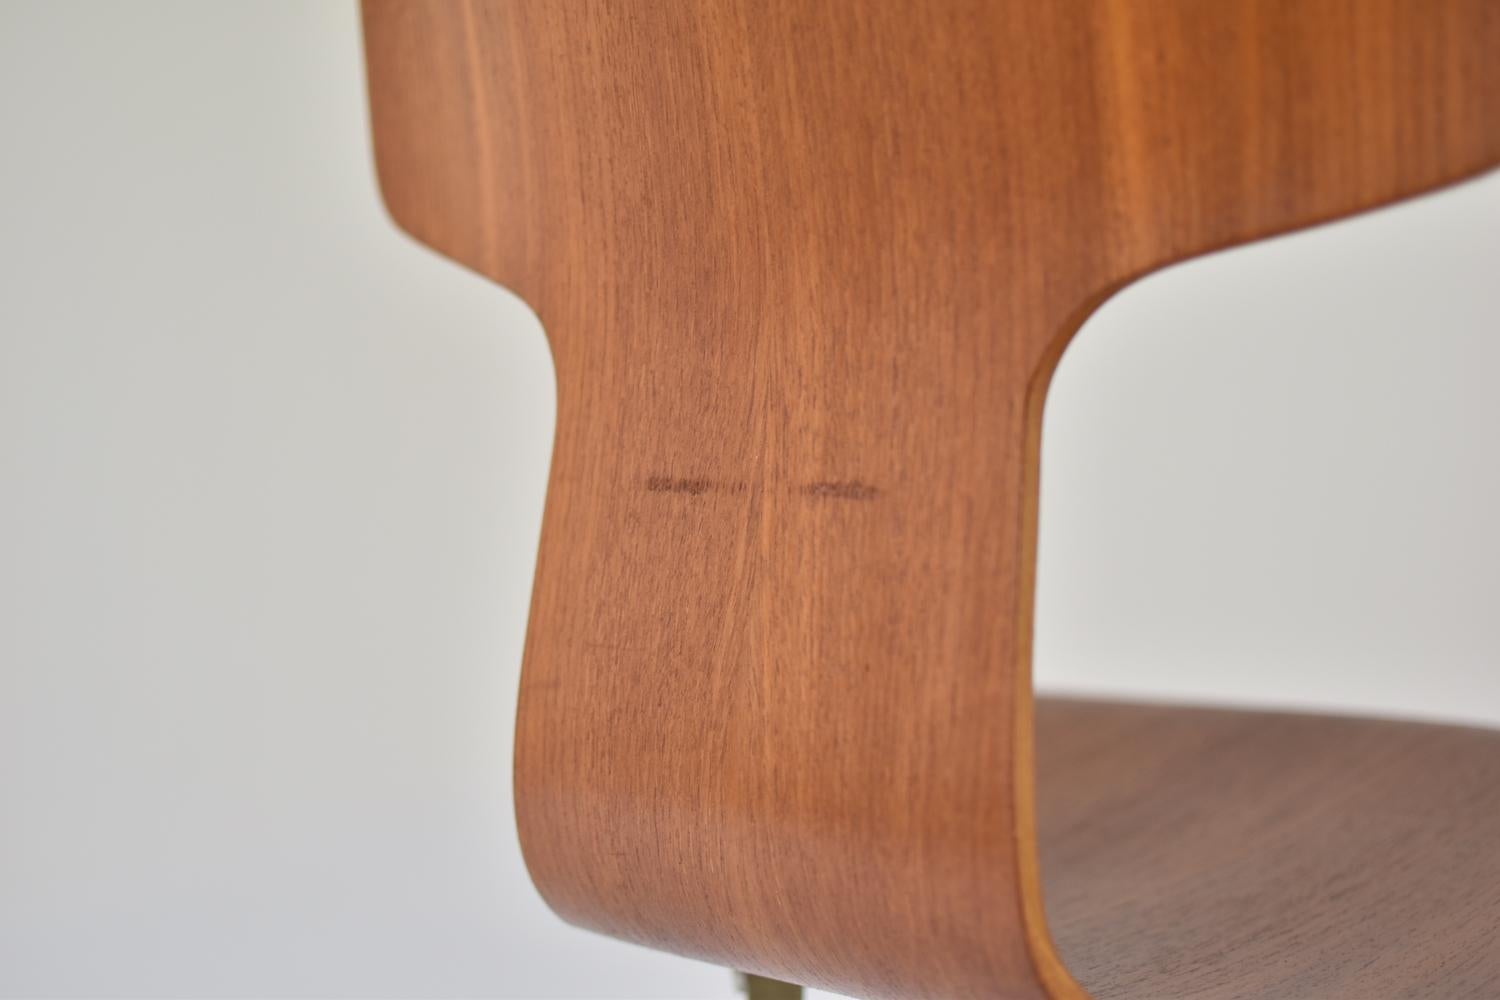 Mid-20th Century 'Hammer' Desk Chair Designed by Arne Jacobsen for Fritz Hansen, Denmark, 1950s